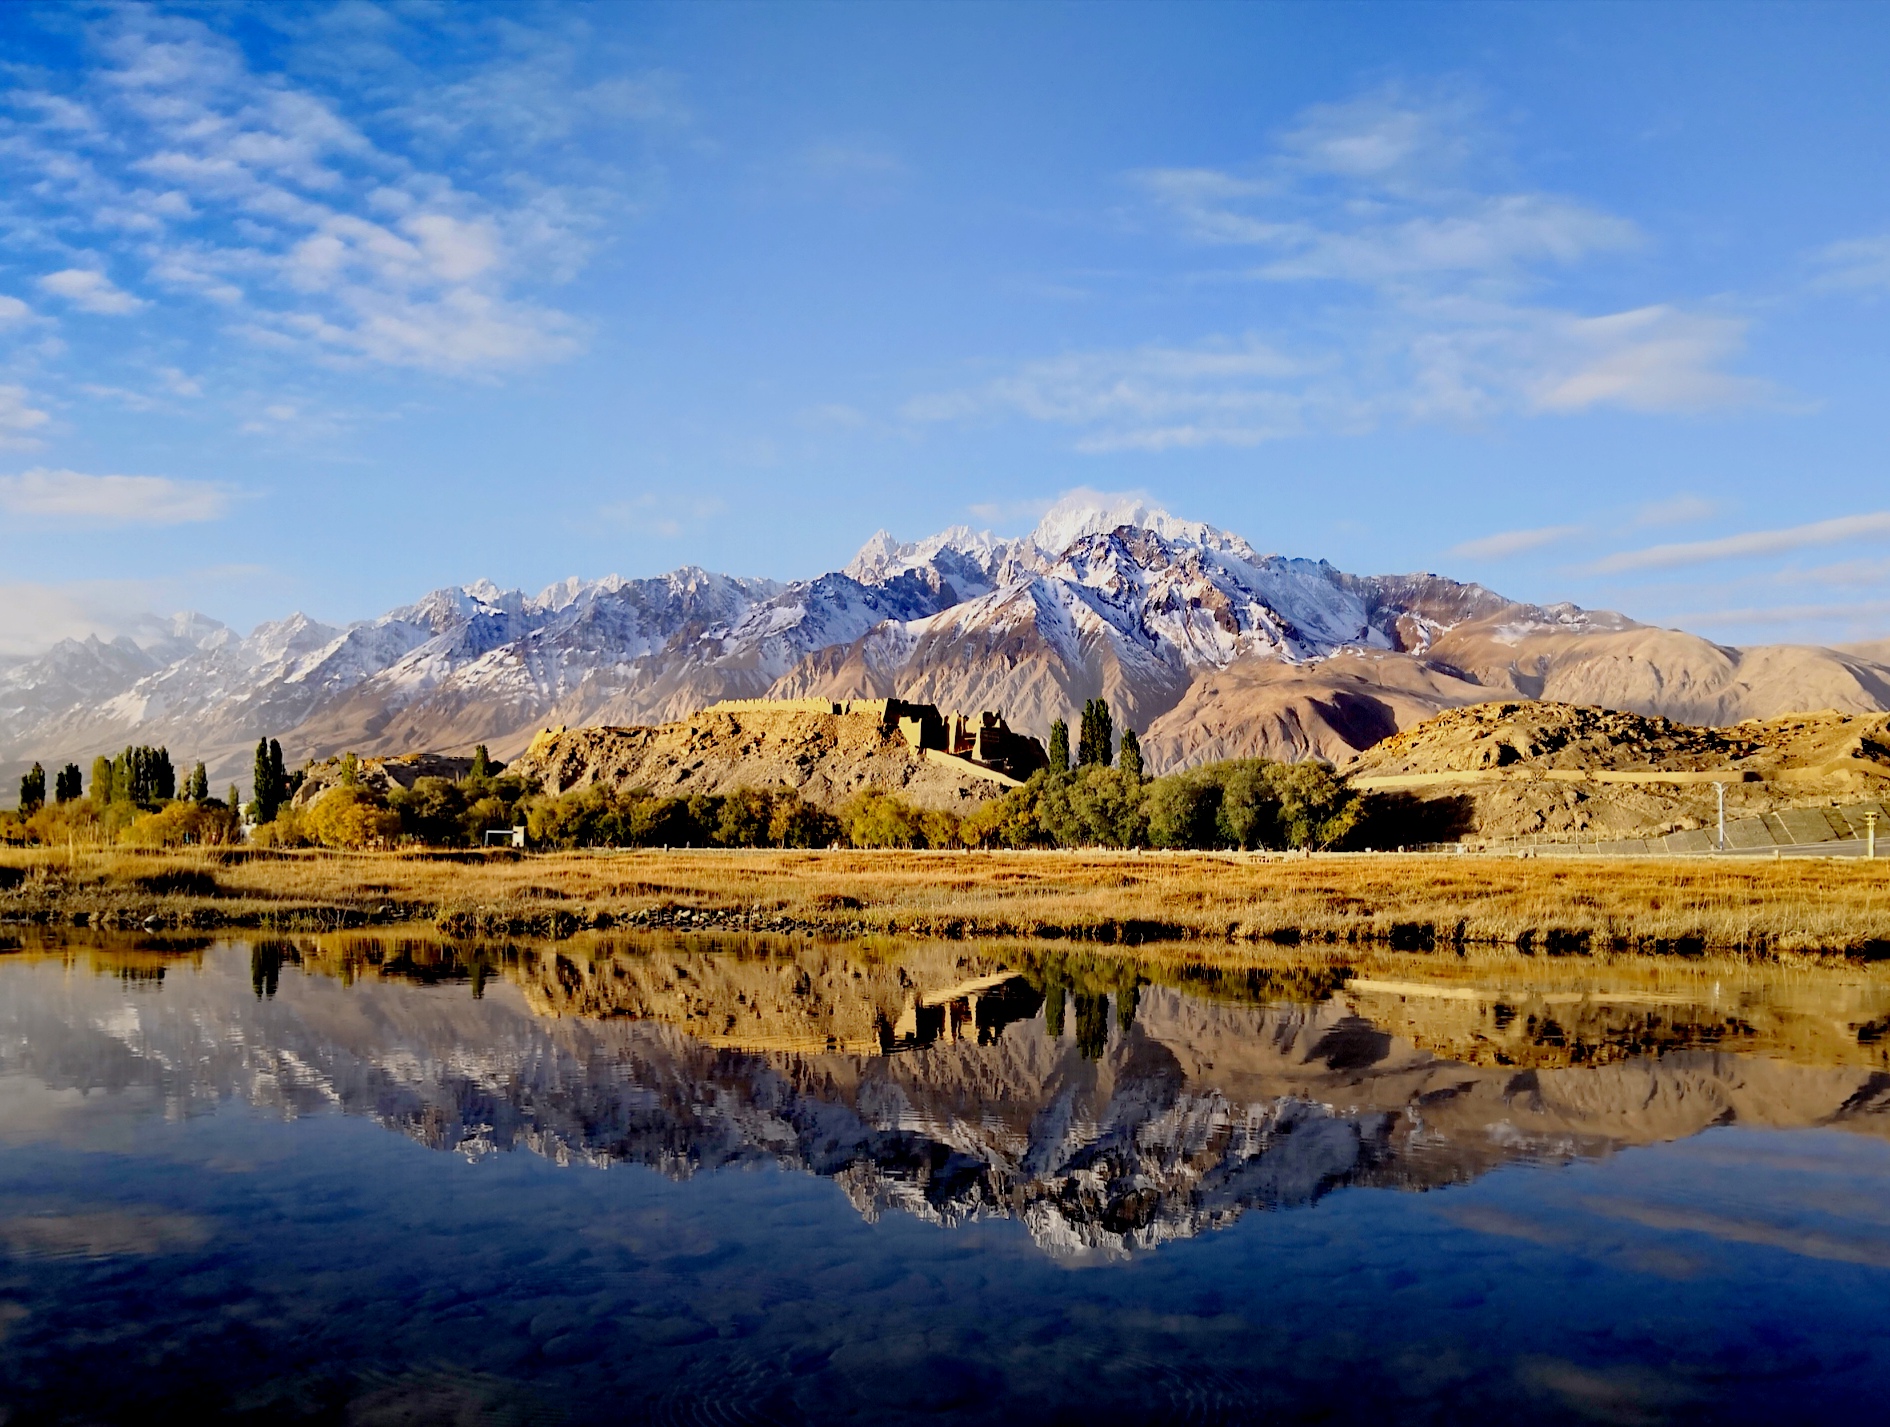 南疆，一个小众旅行之地 I 南疆环线游 路线及攻略